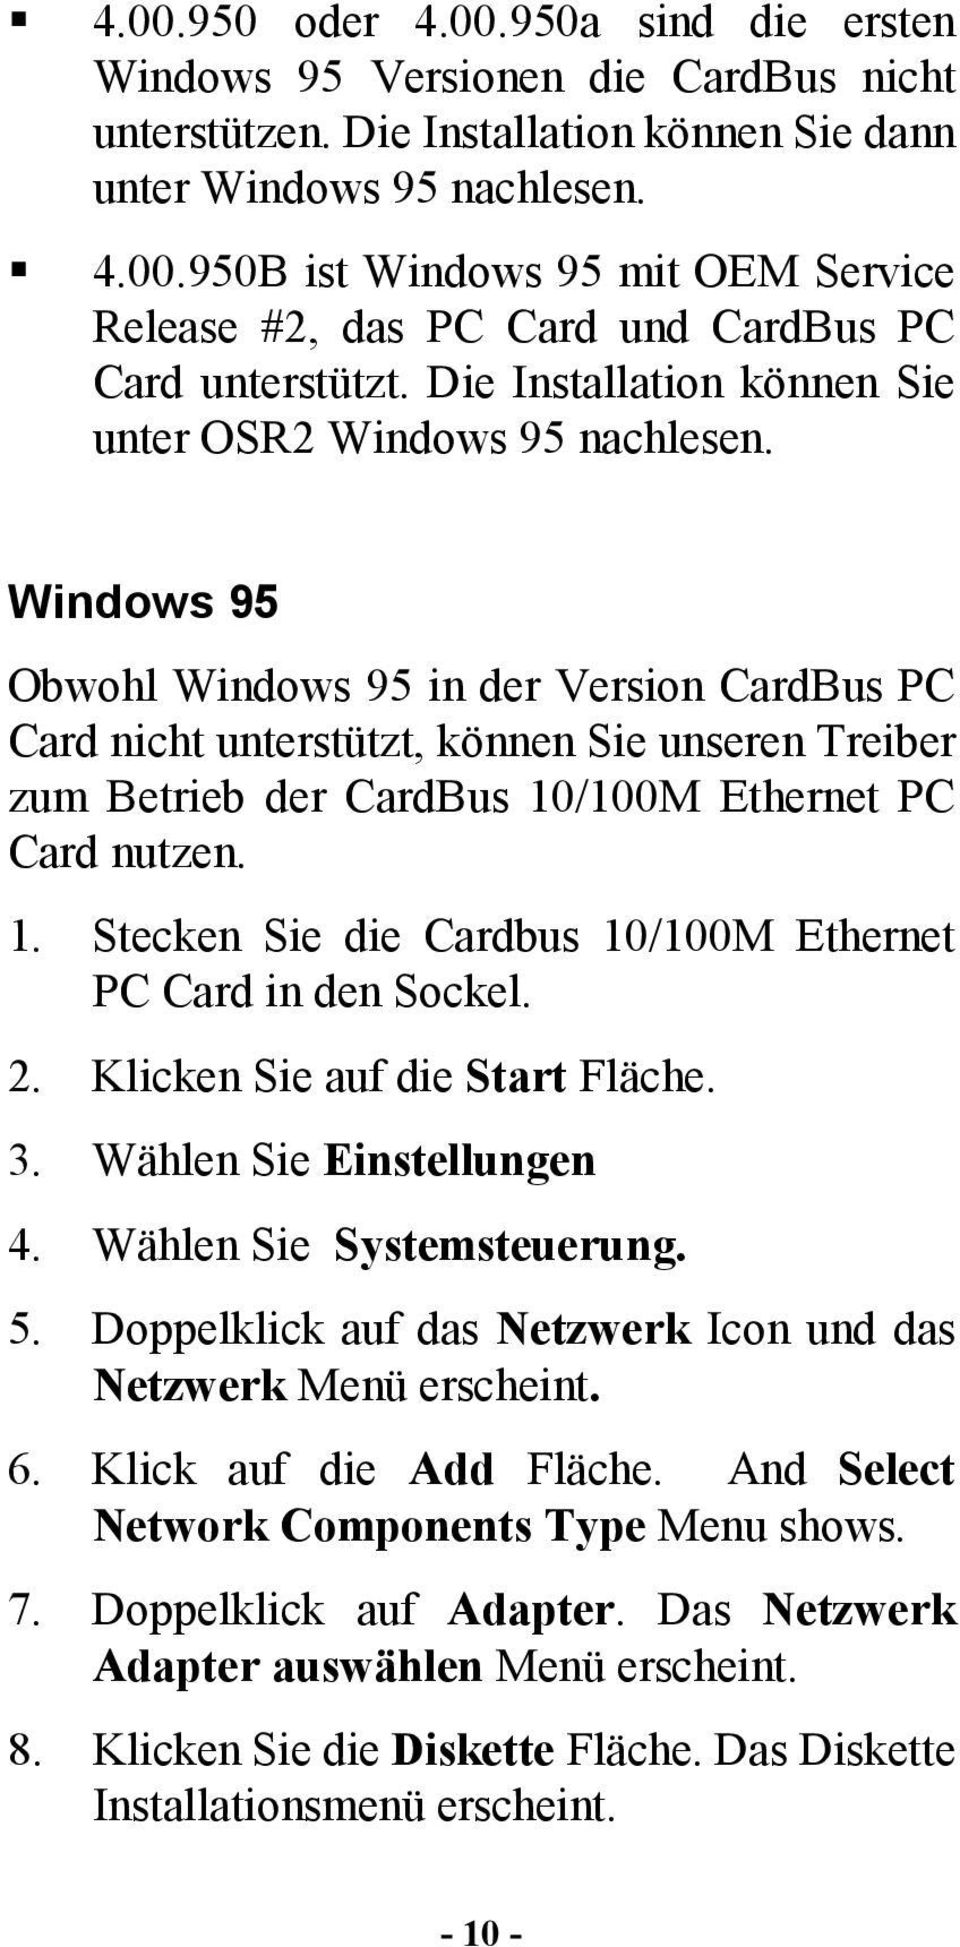 Windows 95 Obwohl Windows 95 in der Version CardBus PC Card nicht unterstützt, können Sie unseren Treiber zum Betrieb der CardBus 10/100M Ethernet PC Card nutzen. 1. Stecken Sie die Cardbus 10/100M Ethernet PC Card in den Sockel.